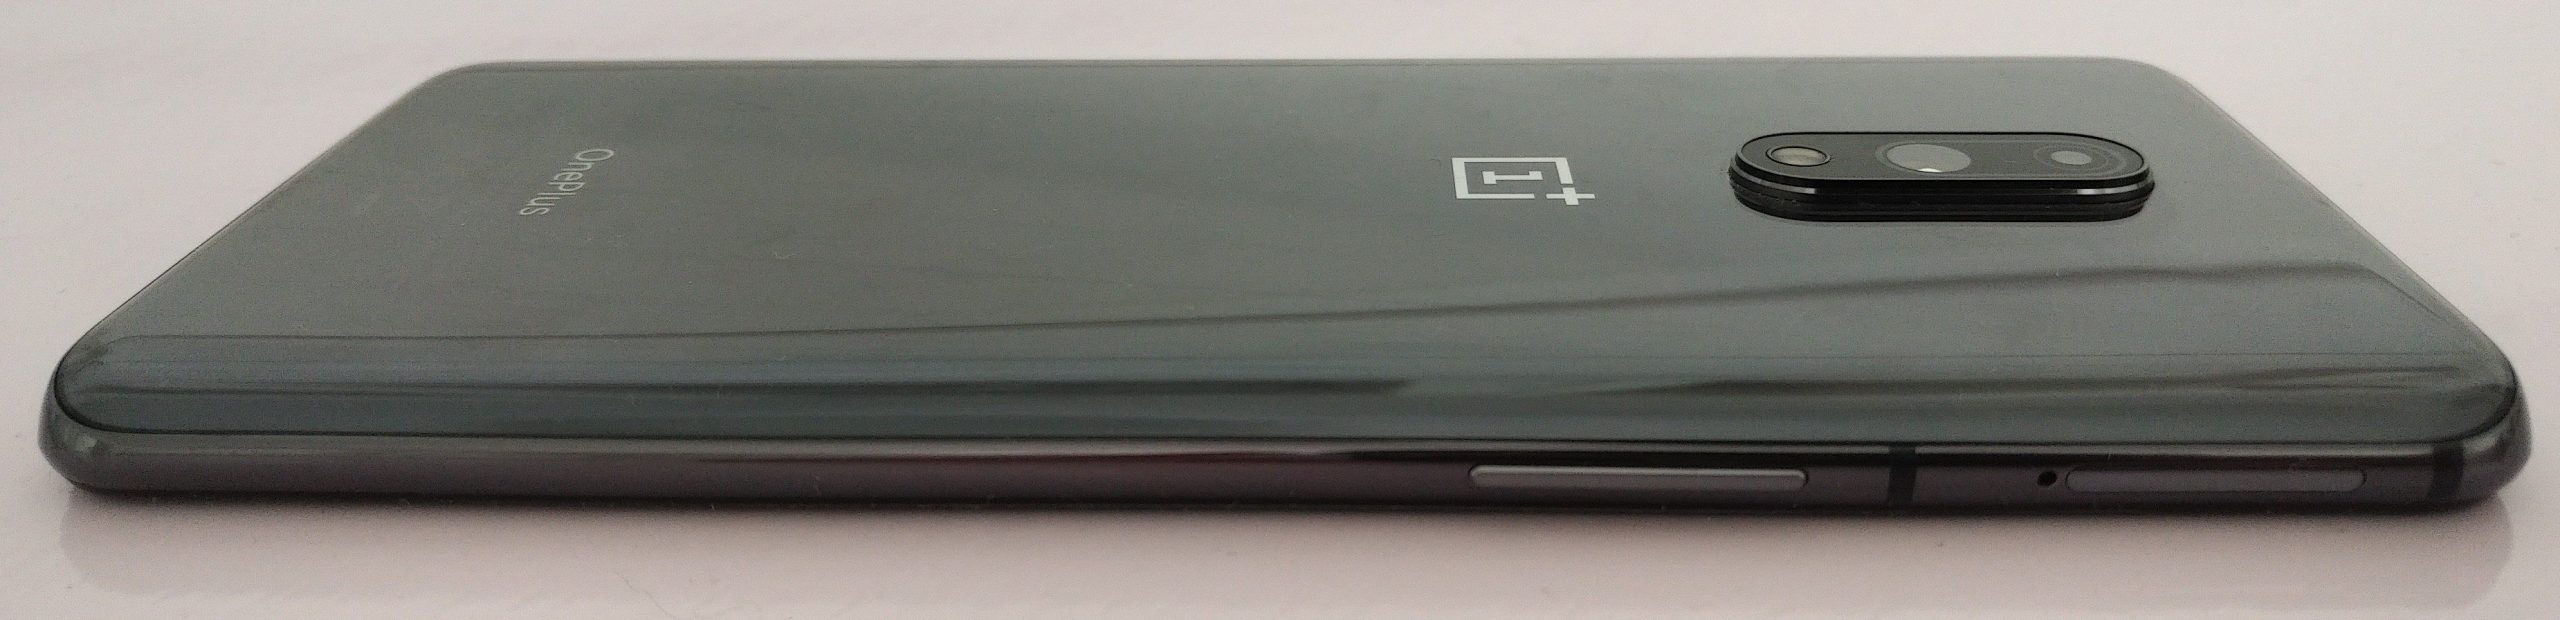 Vasemmalla on äänenvoimakkuudensäädin ja SIM-korttipaikka. Muistikorttia OnePlus 7 ei syö.